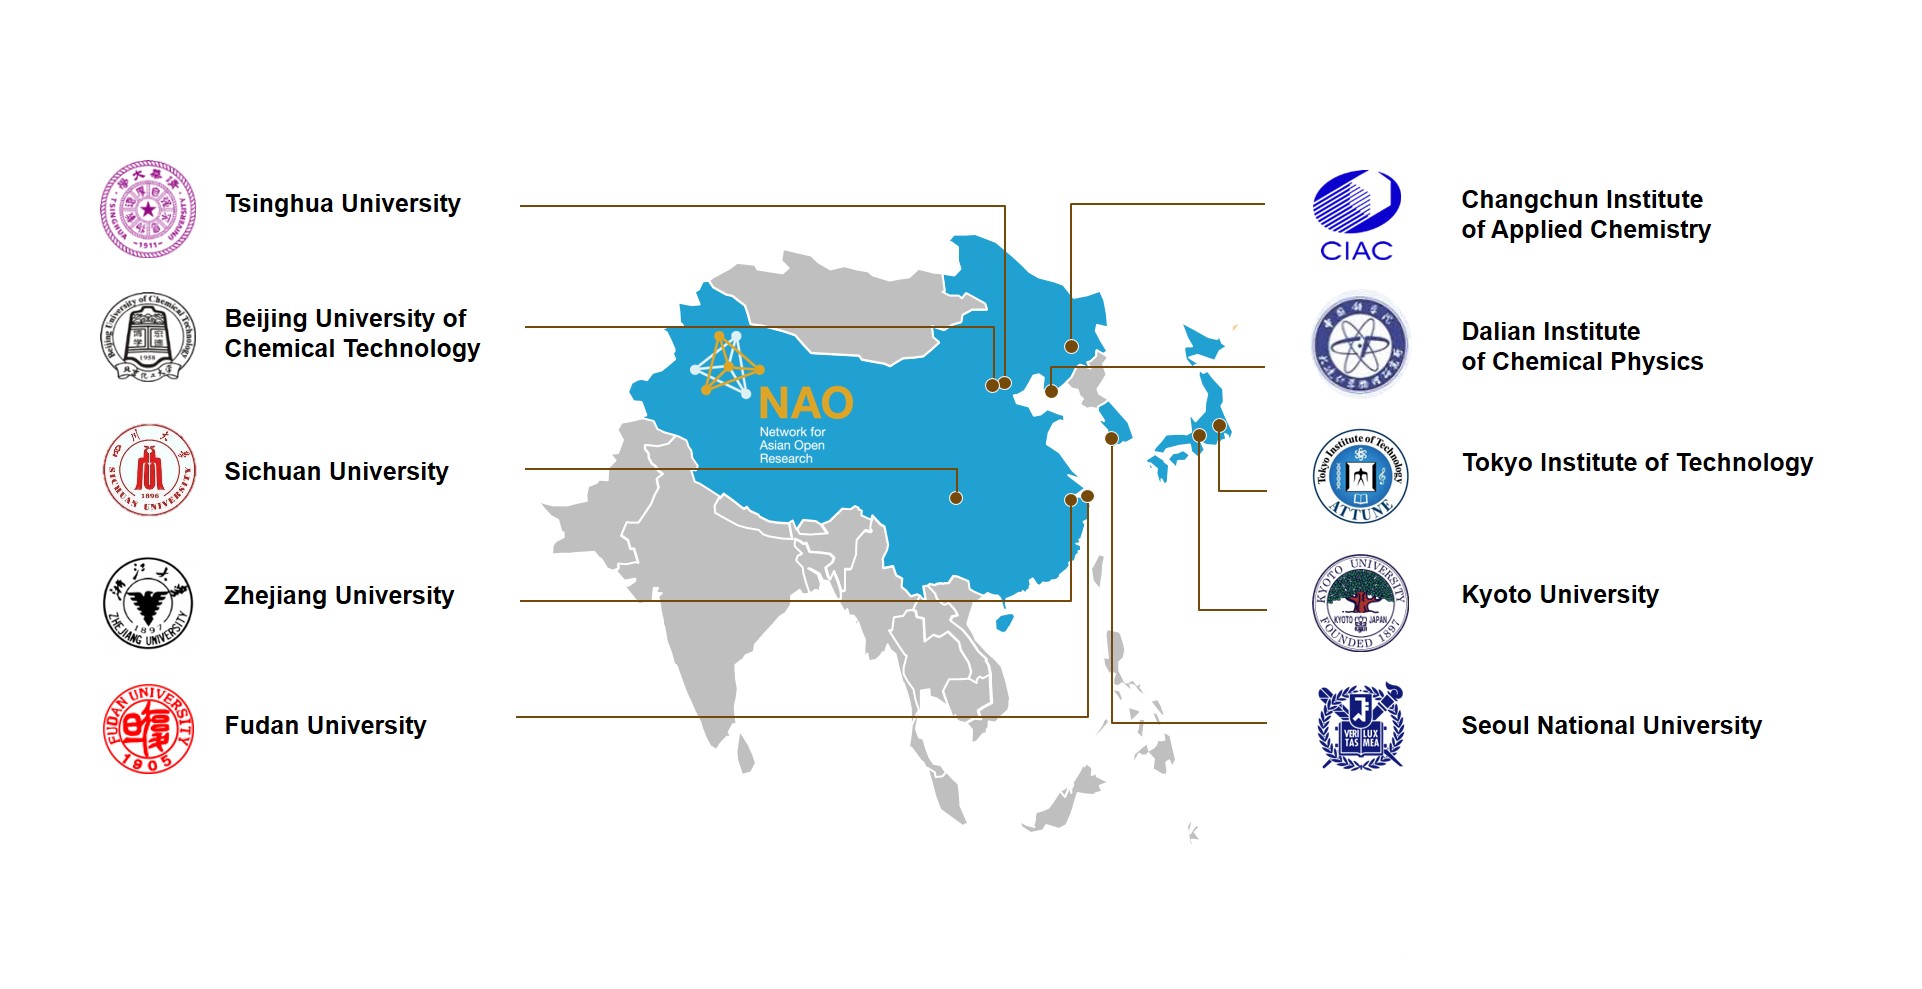 巴斯夫扩展亚洲开放研讨网络(NAO)合作范围